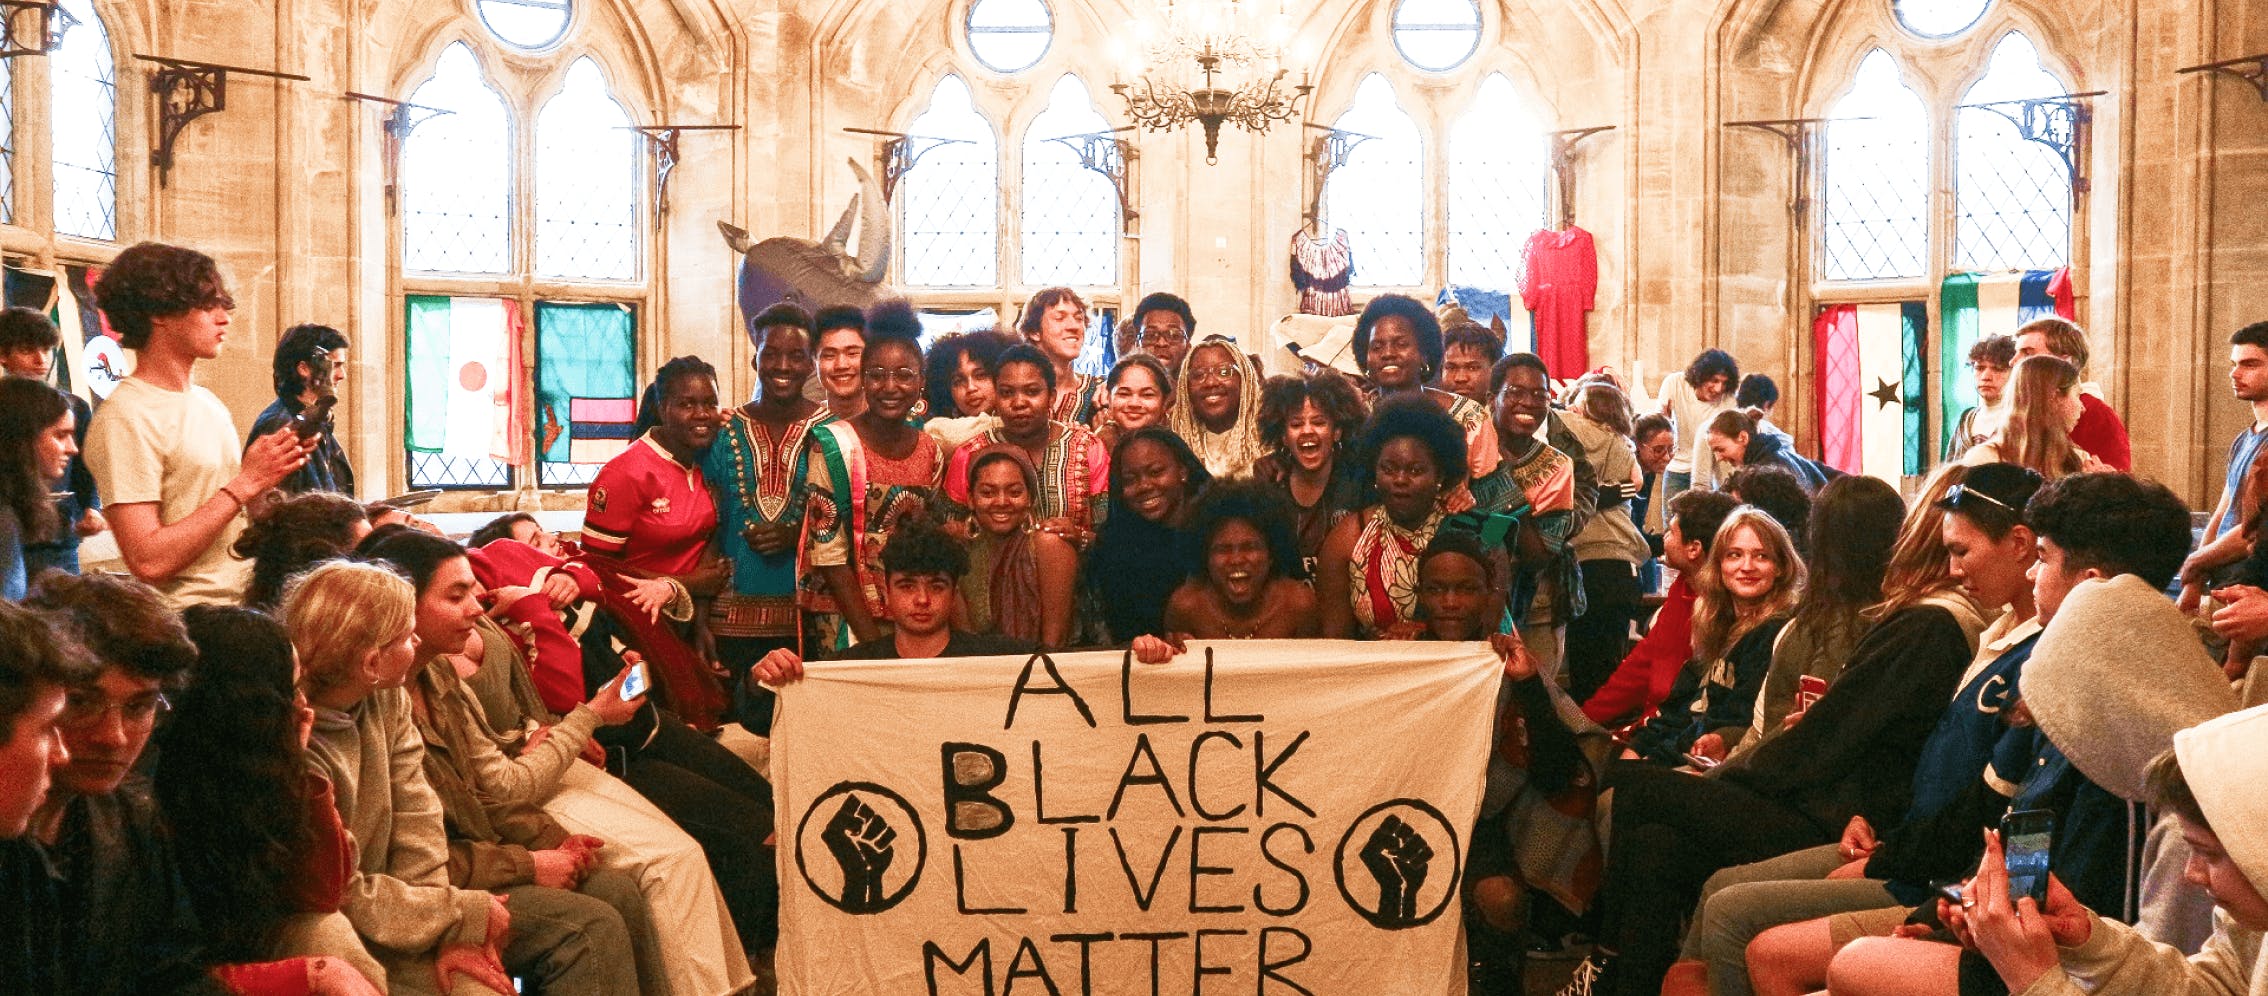 Black lives matter conference